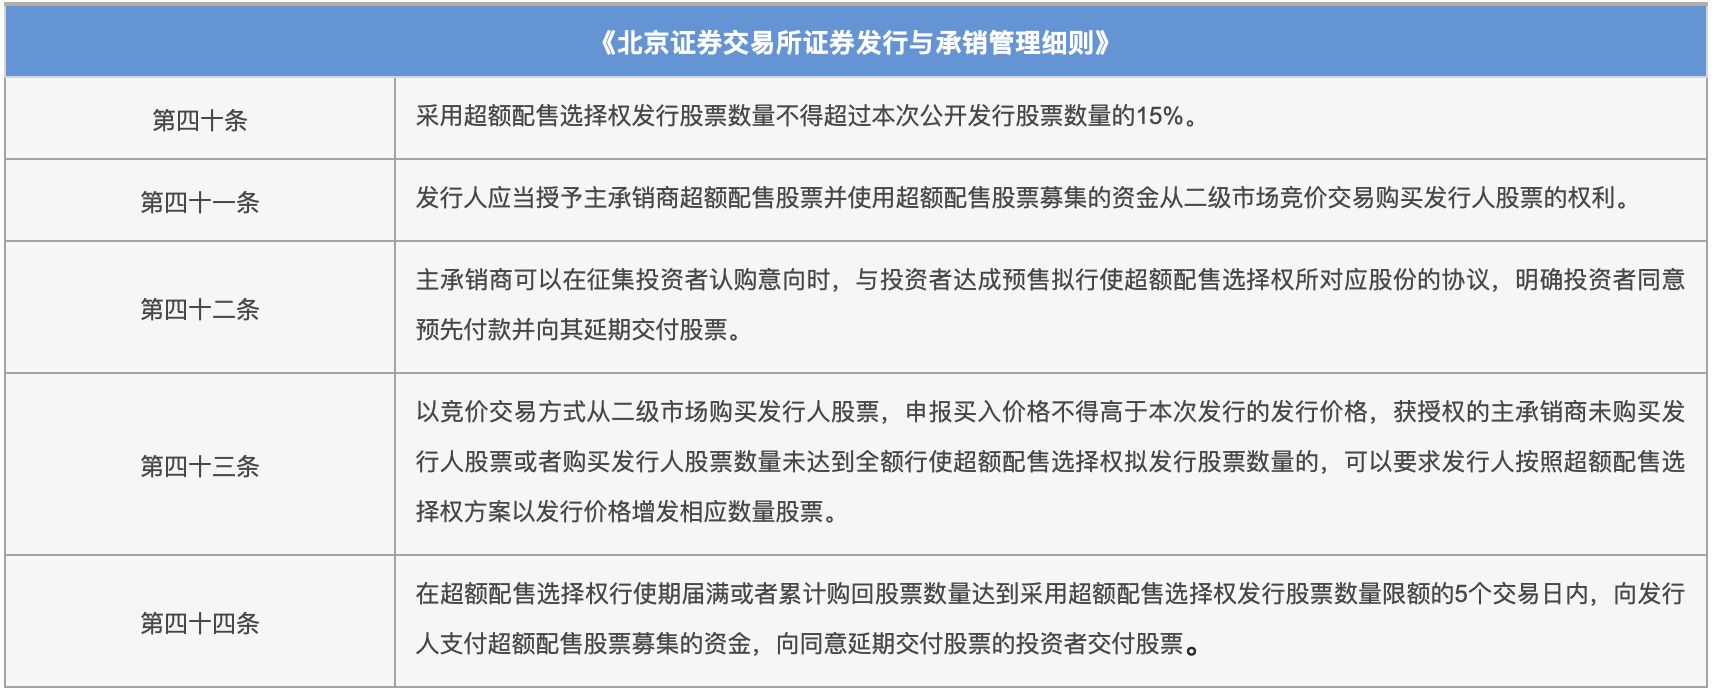 《北京证券交易所证券发行与承销管理细则》